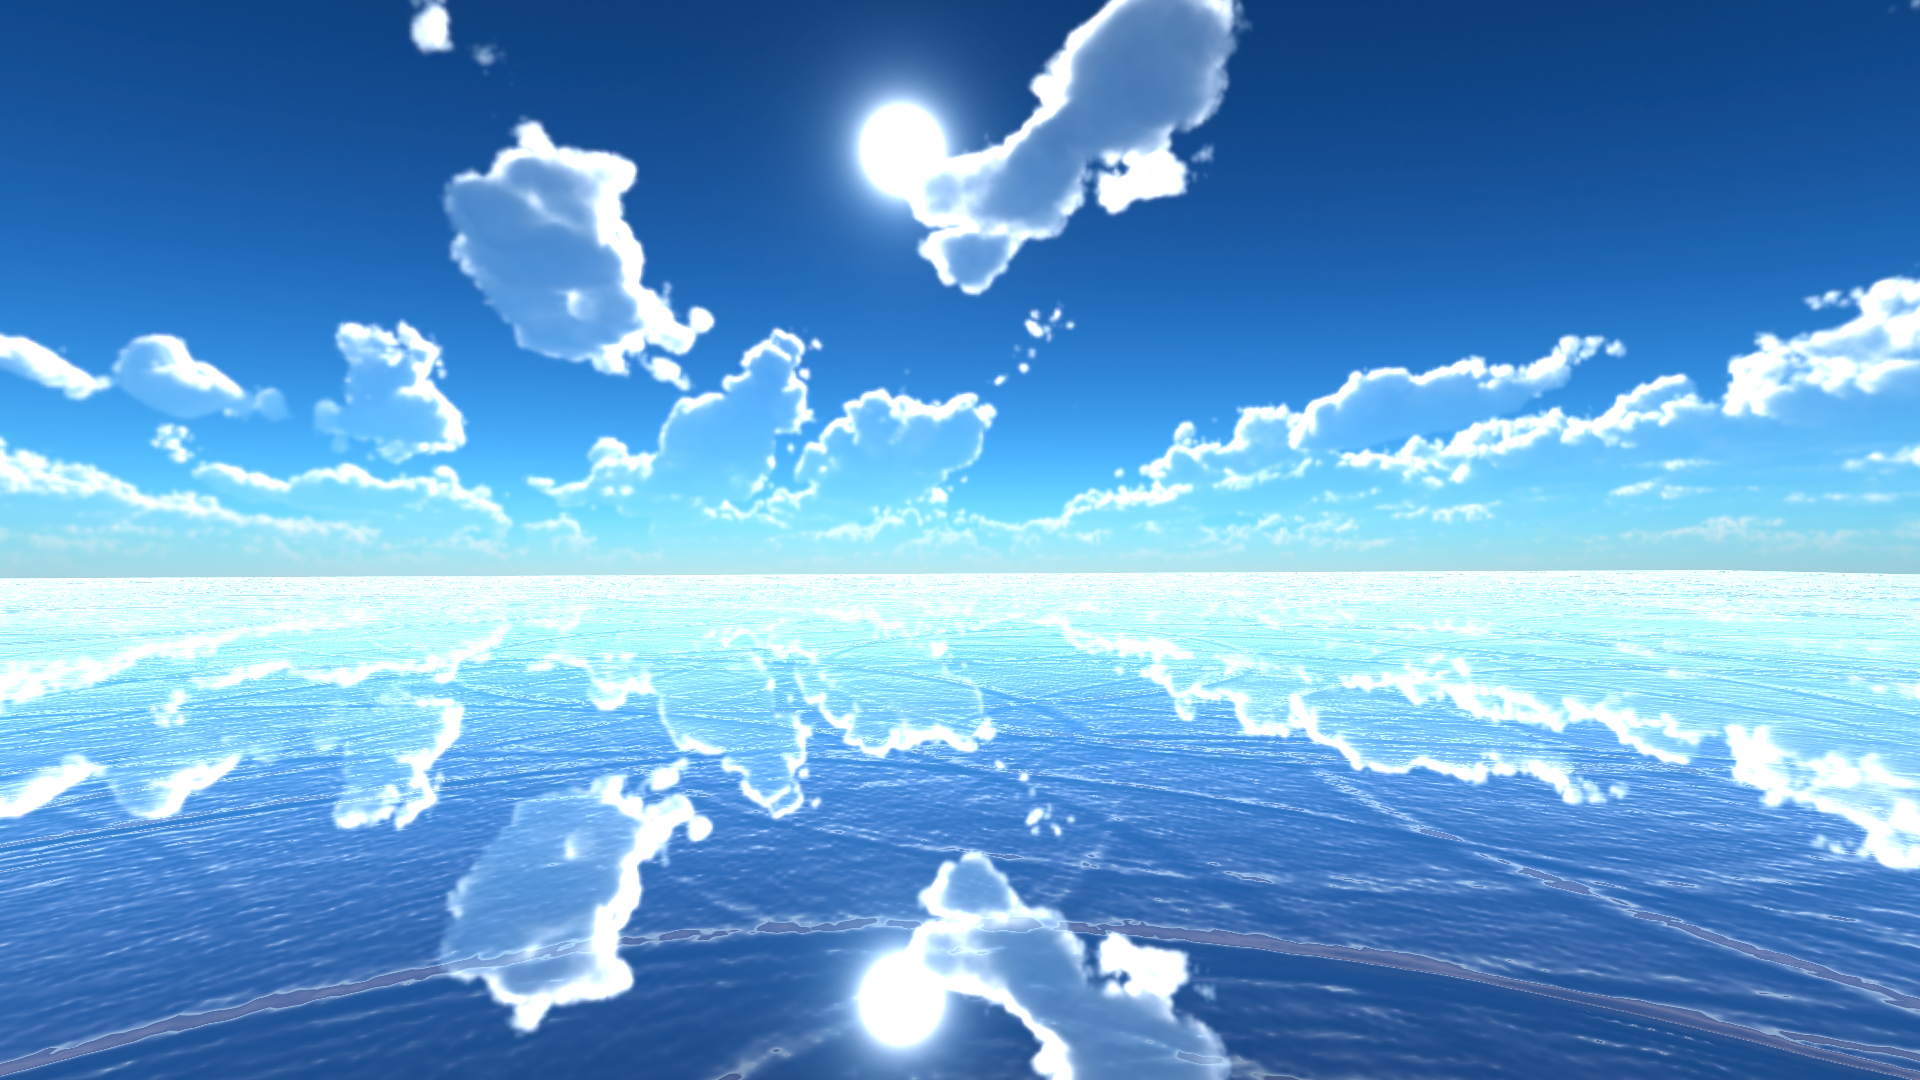 なめりん メタバース 天空の鏡 ウユニ塩湖をイメージした綺麗なワールド作ってみました よかったら遊びに来てください Vrchat Vrchat World紹介 T Co Kzubqkieot Twitter